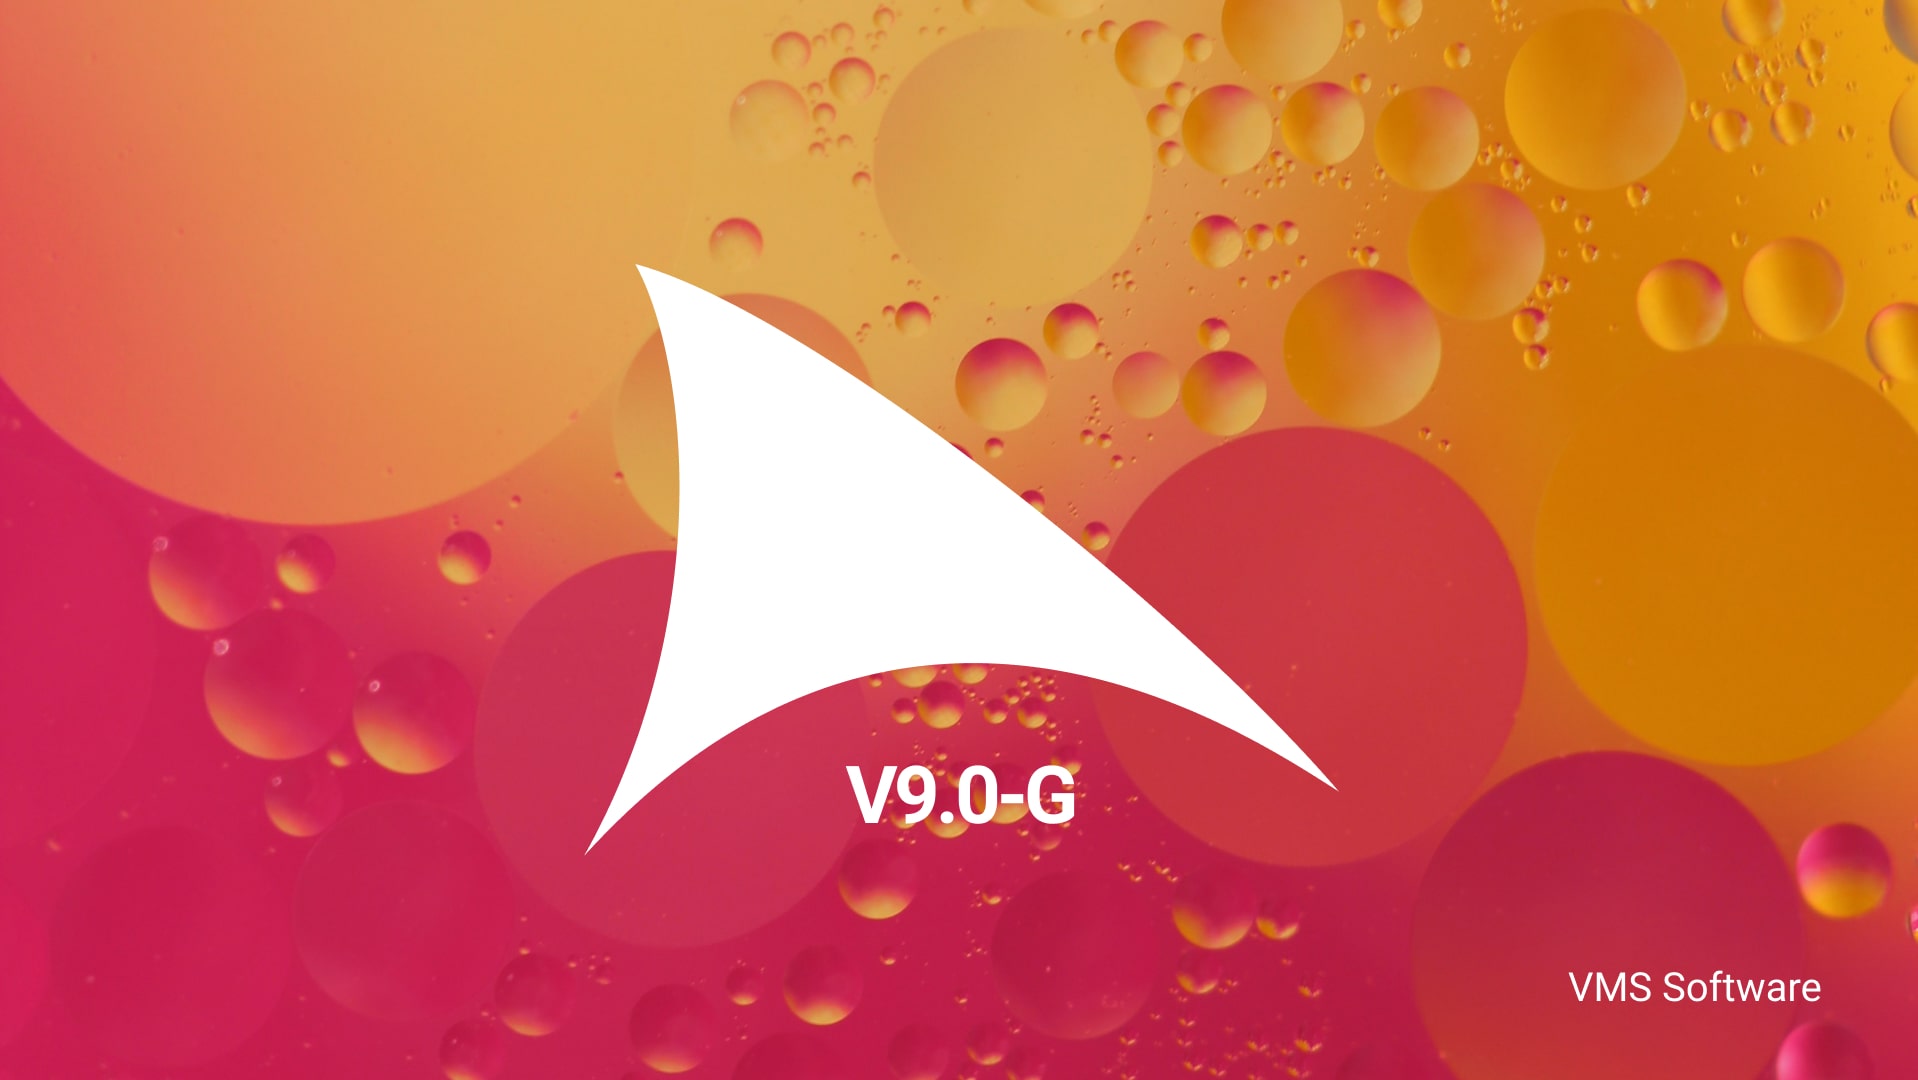 VSI OpenVMS V9.0-G Released